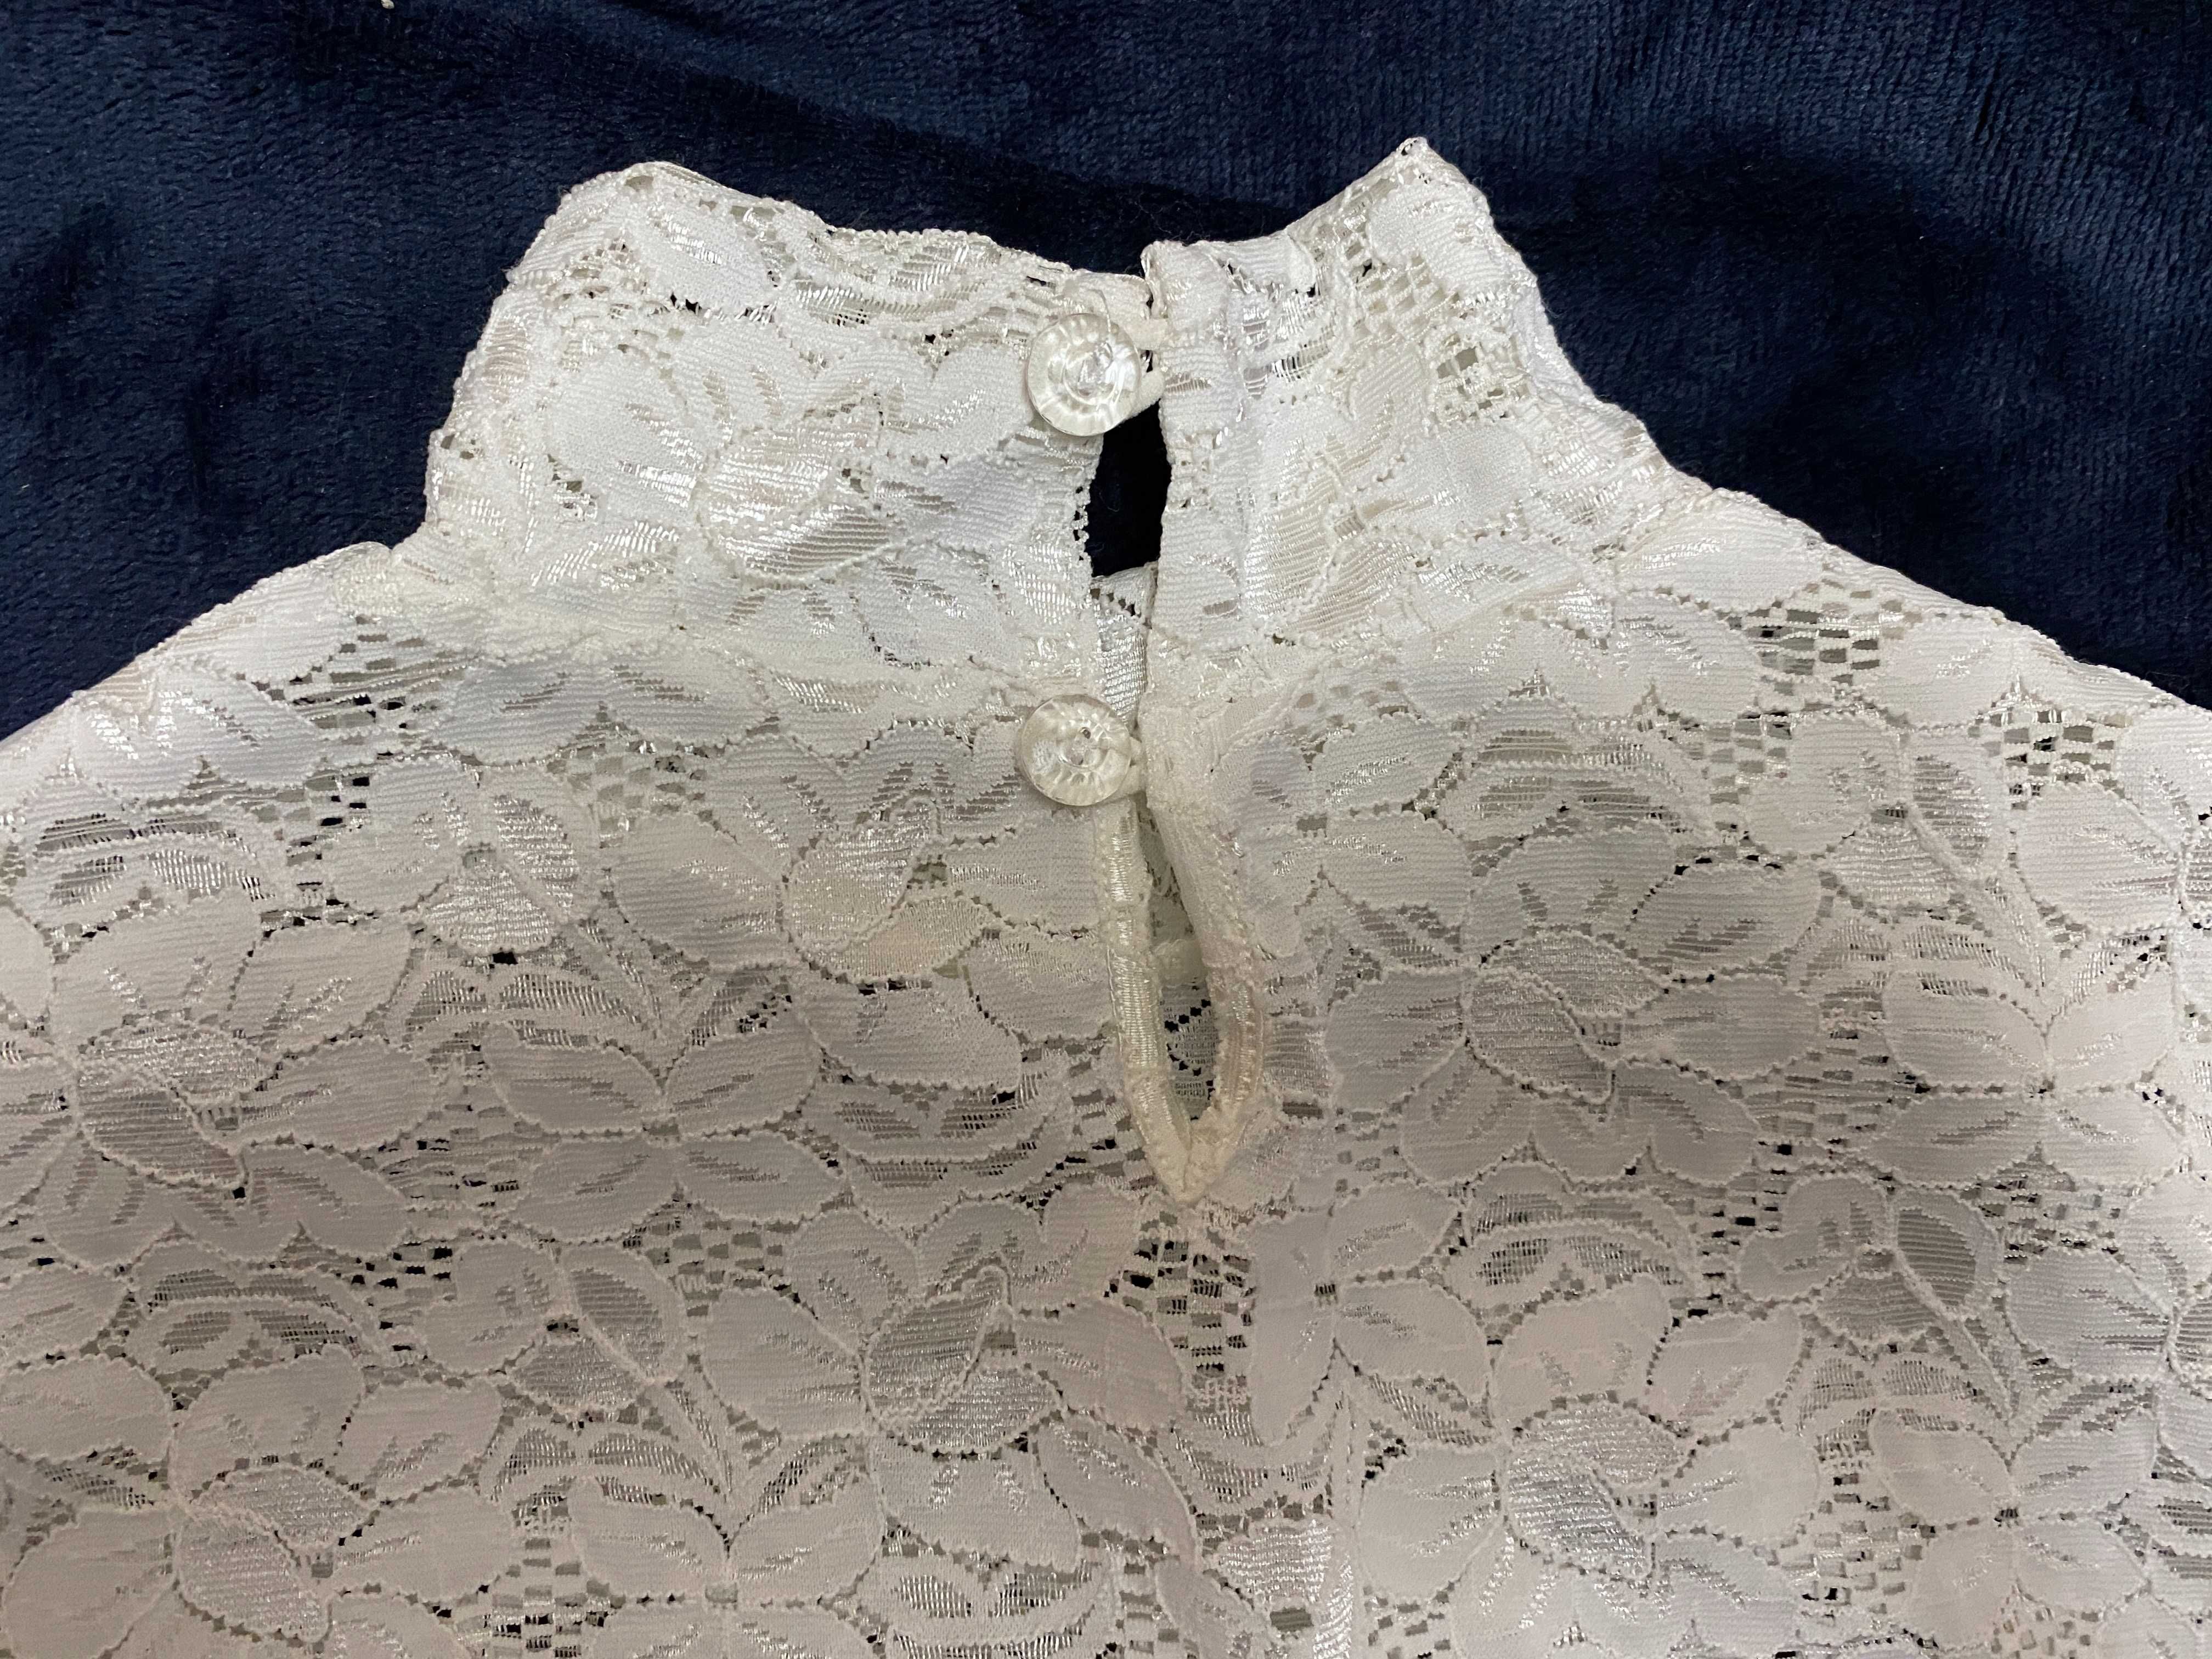 Блузка біла  Блуза/блузка белая ажурная р.42-44